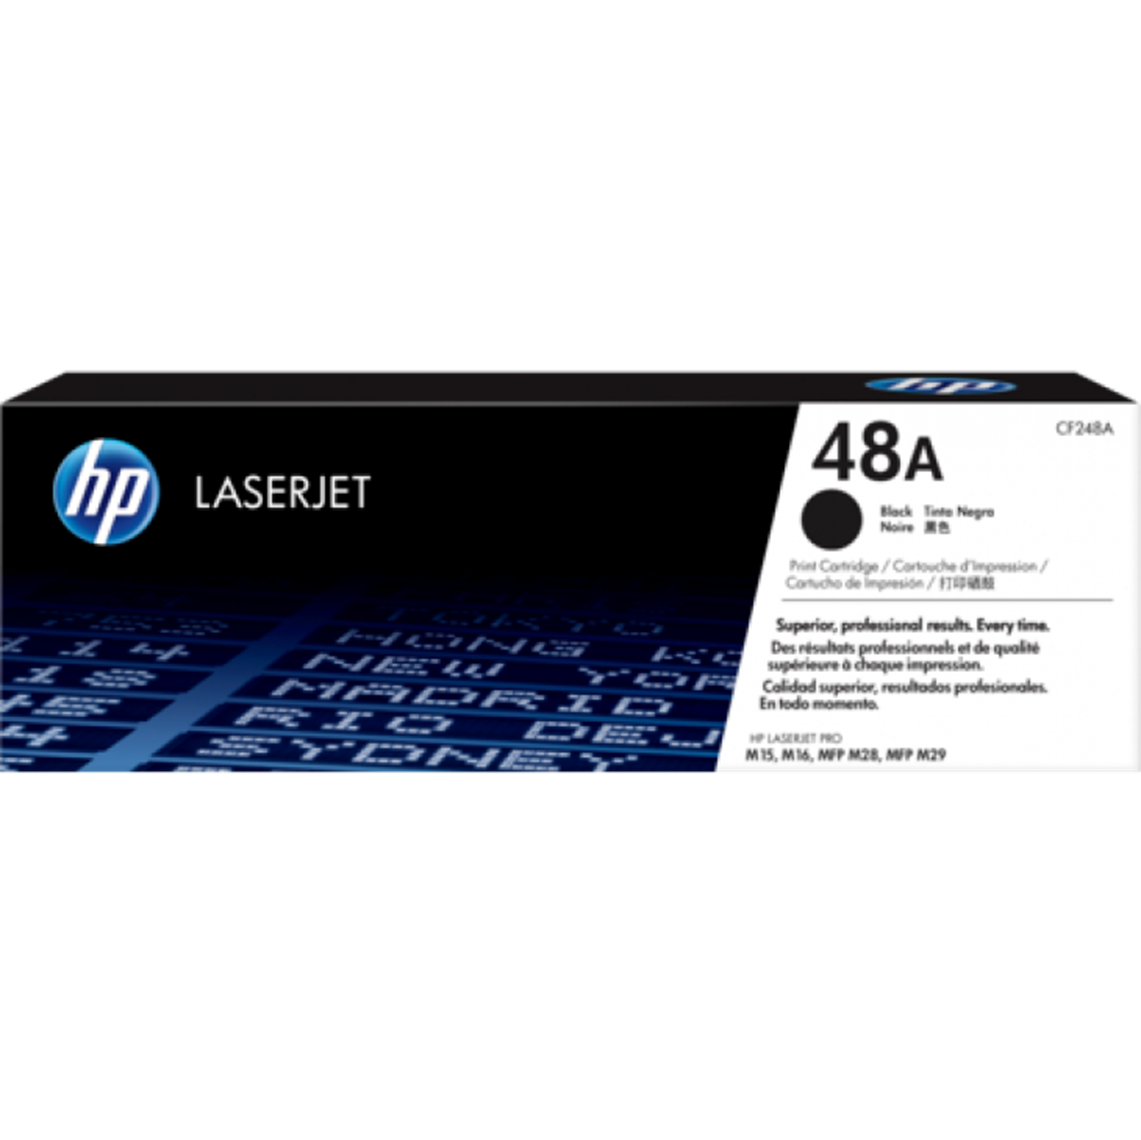 HP LaserJet Pro MFP M28w 代用碳粉規格